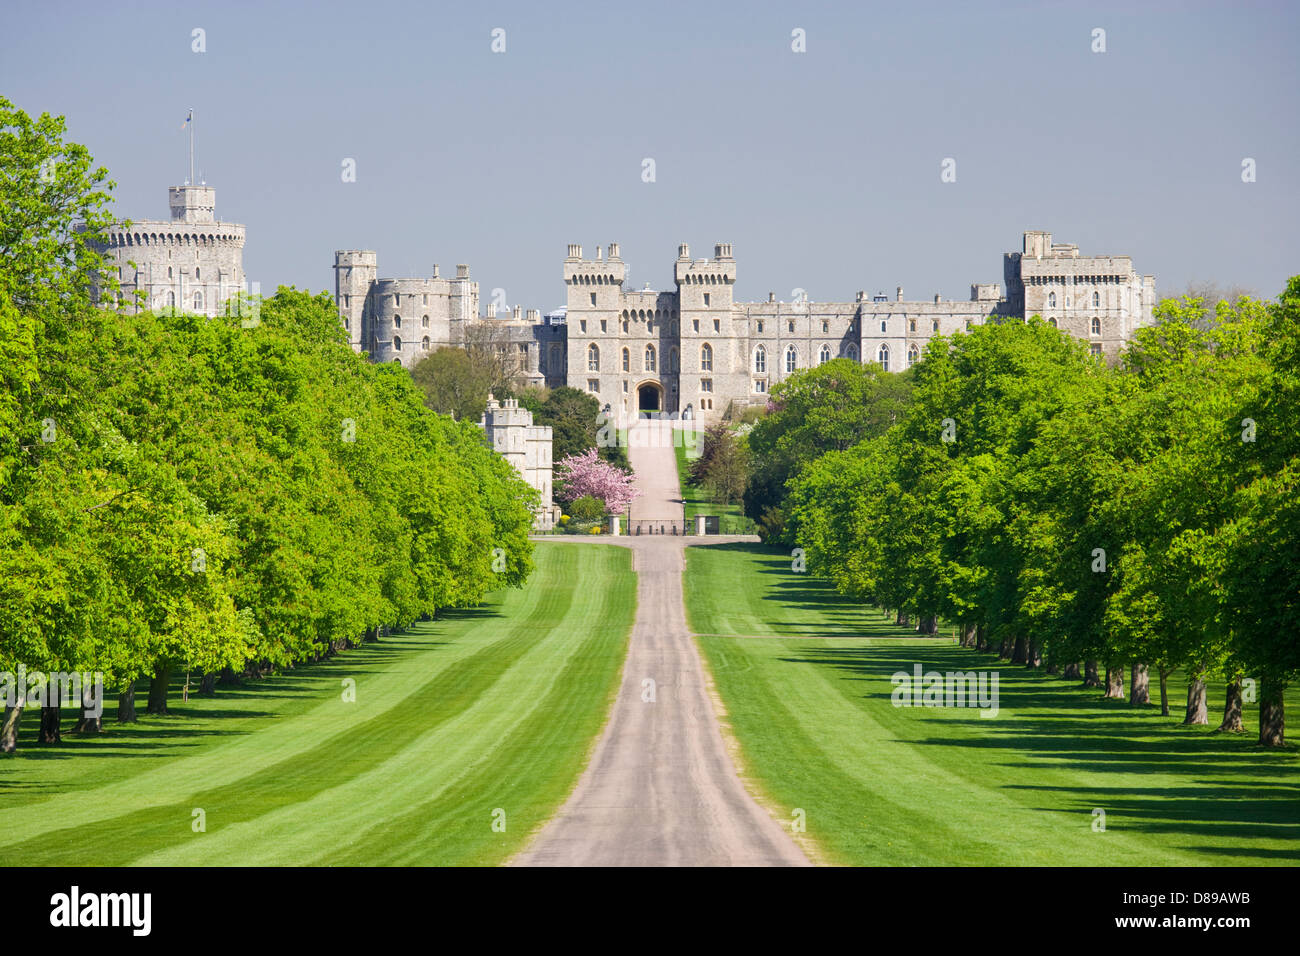 Le Château de Windsor à partir de la Longue Marche, Berkshire, Angleterre, Royaume-Uni. Banque D'Images